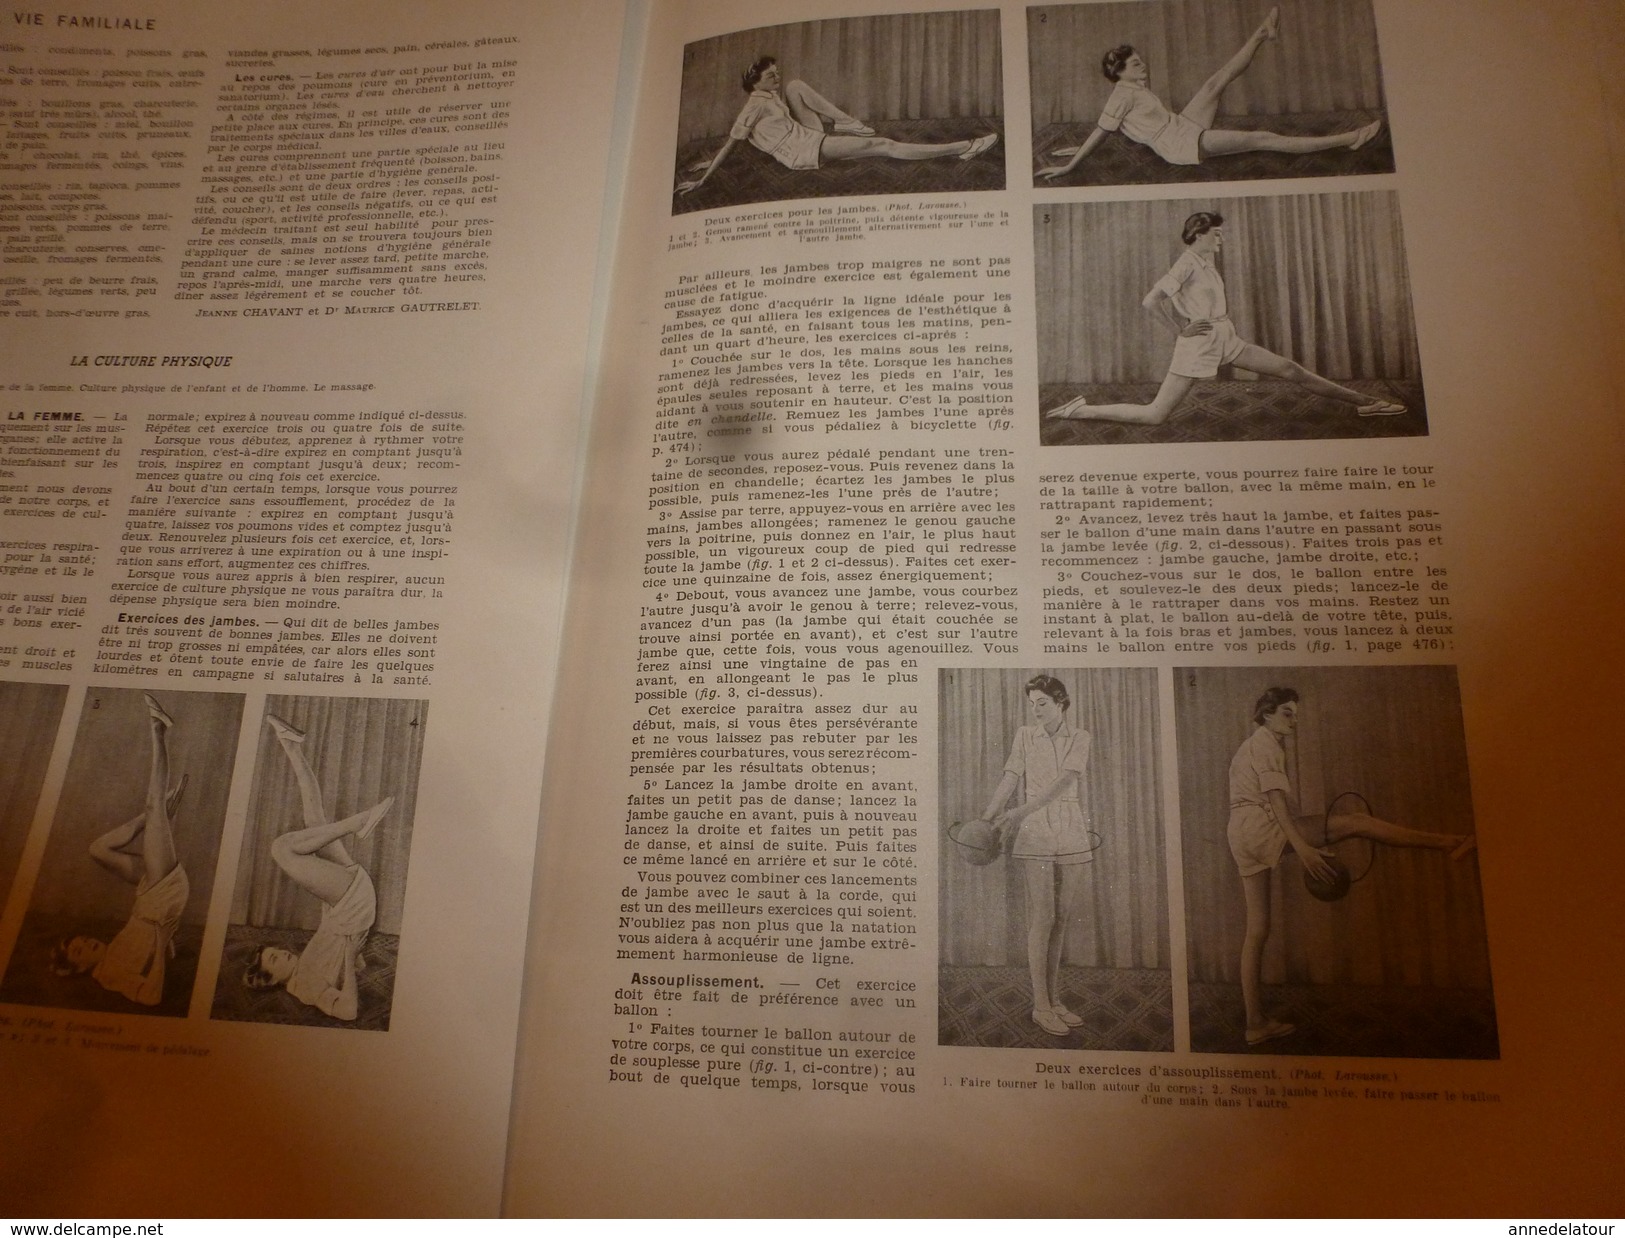 1950 ENCYCLOPEDIE FAMILIALE LAROUSSE ->Le tricot, Le crochet, L'hygiène de l'habitation, Les soins du corps